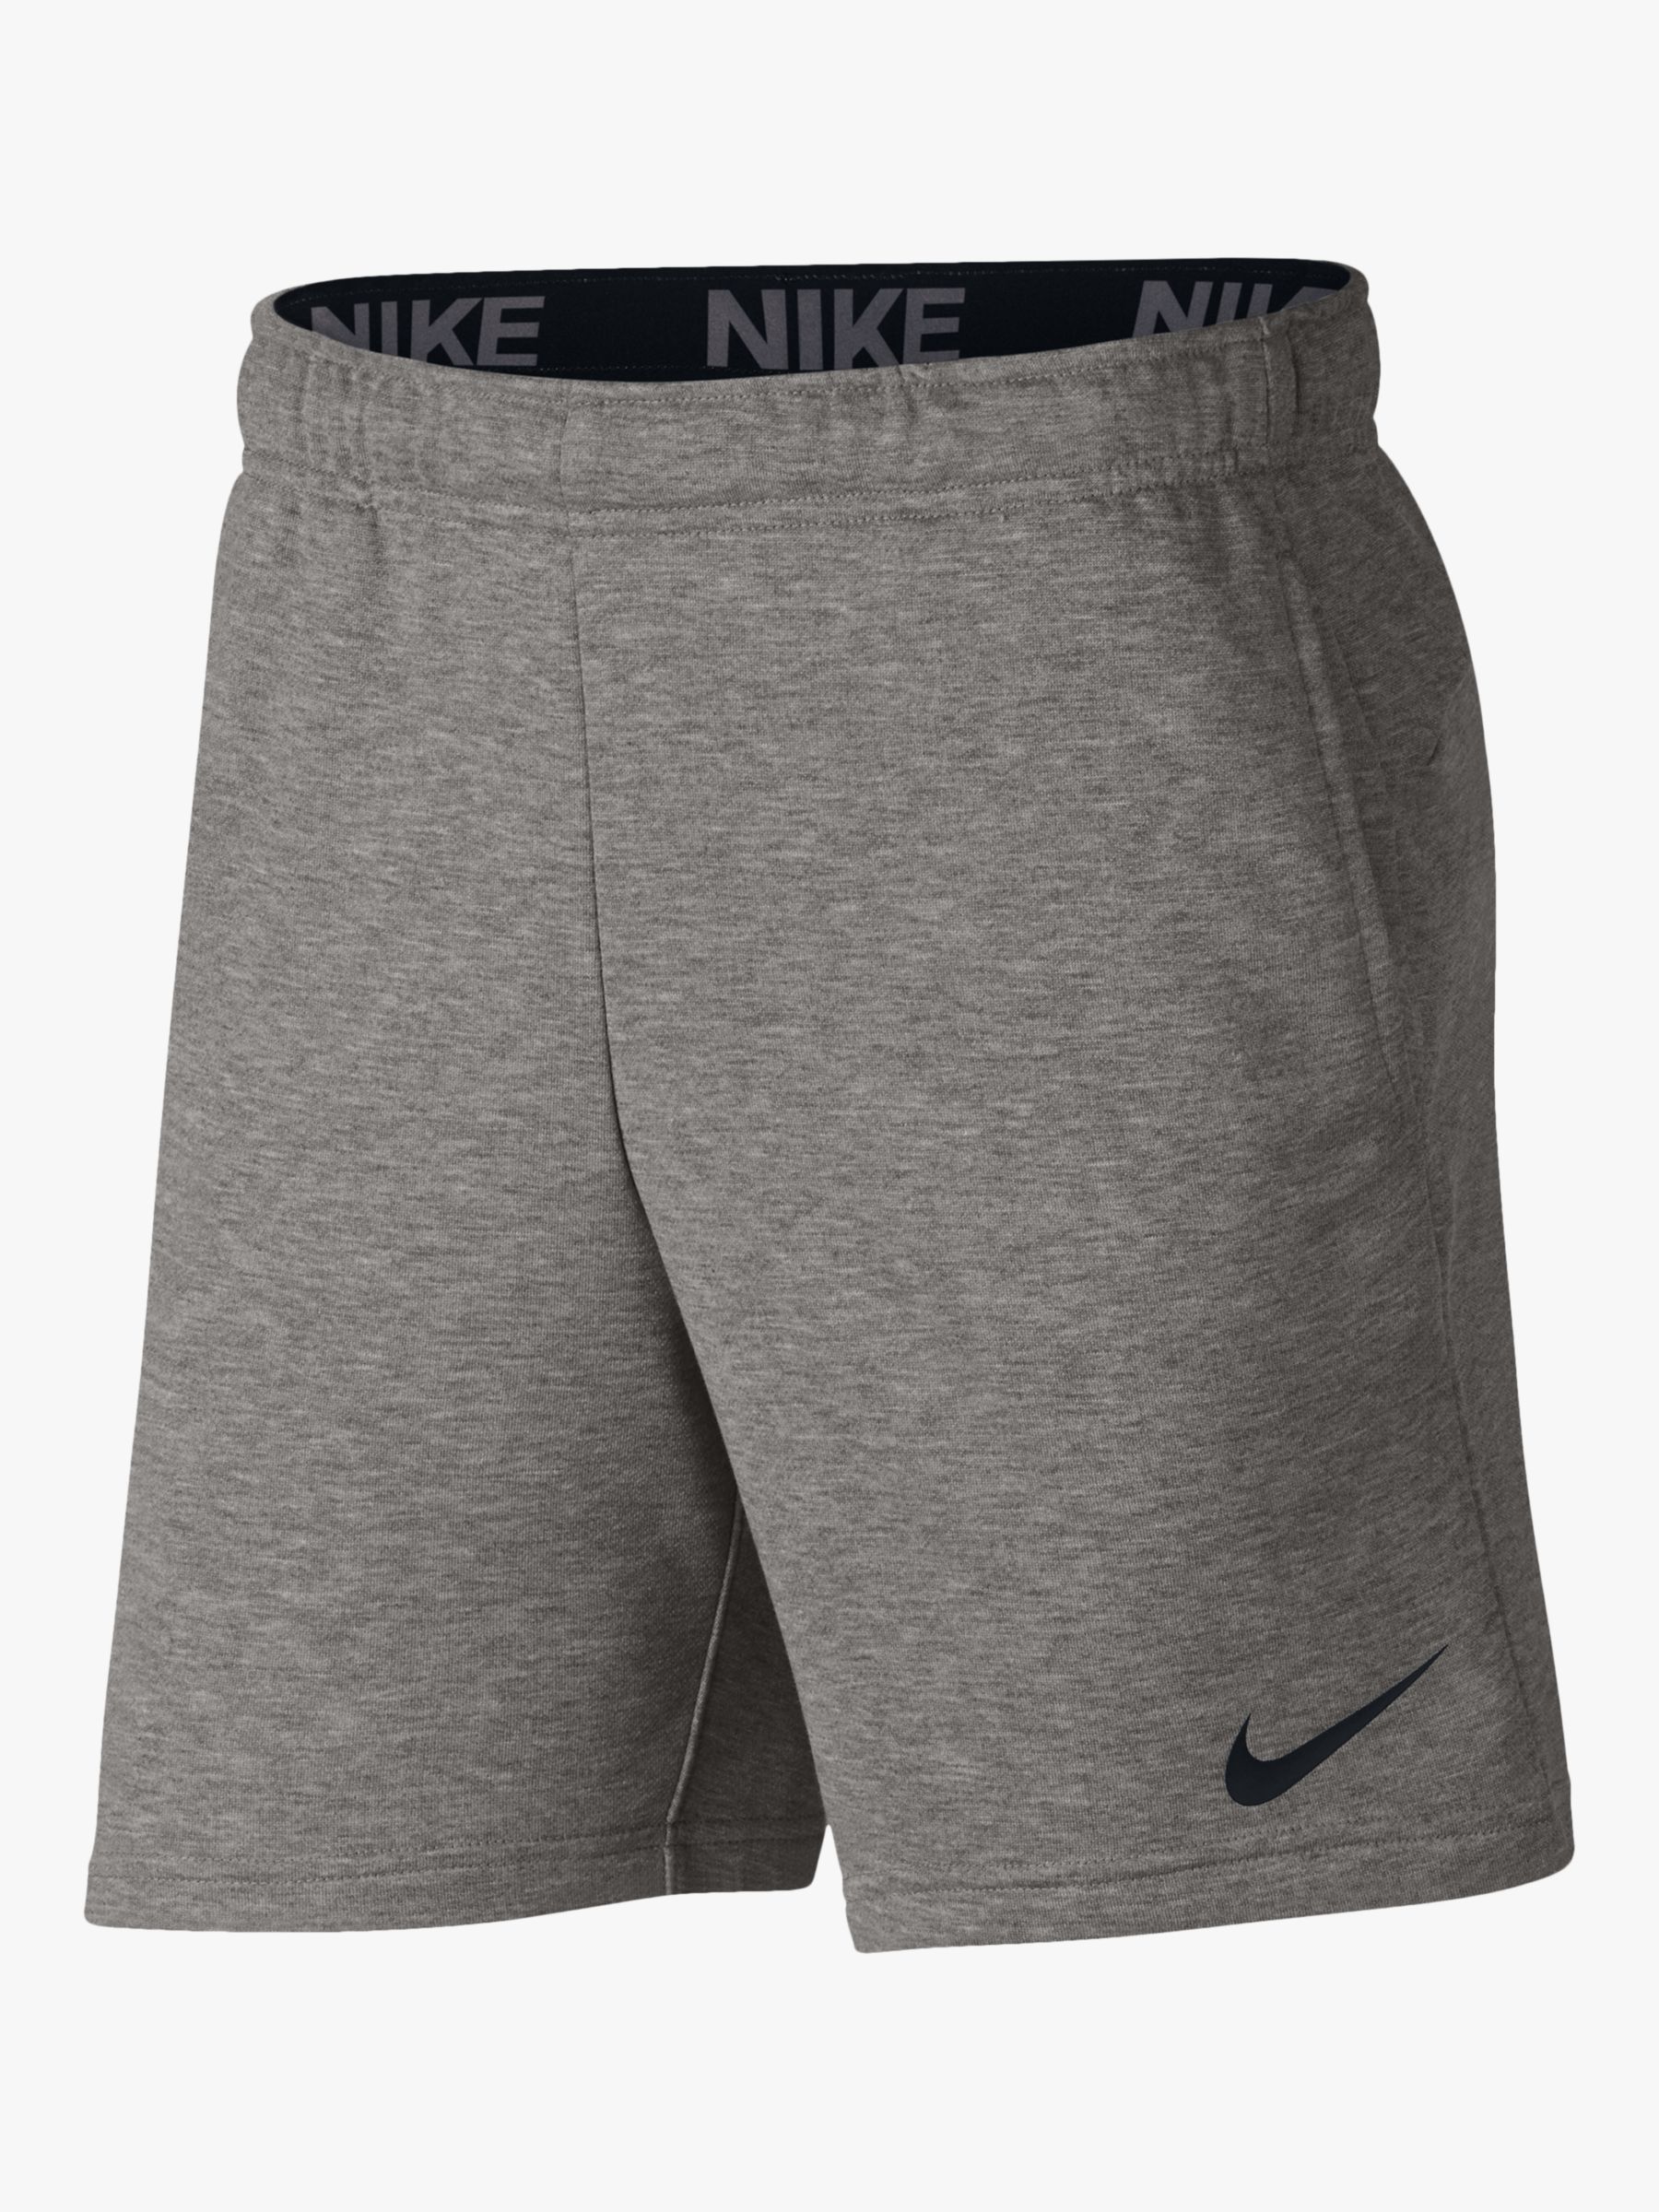 grey nike gym shorts